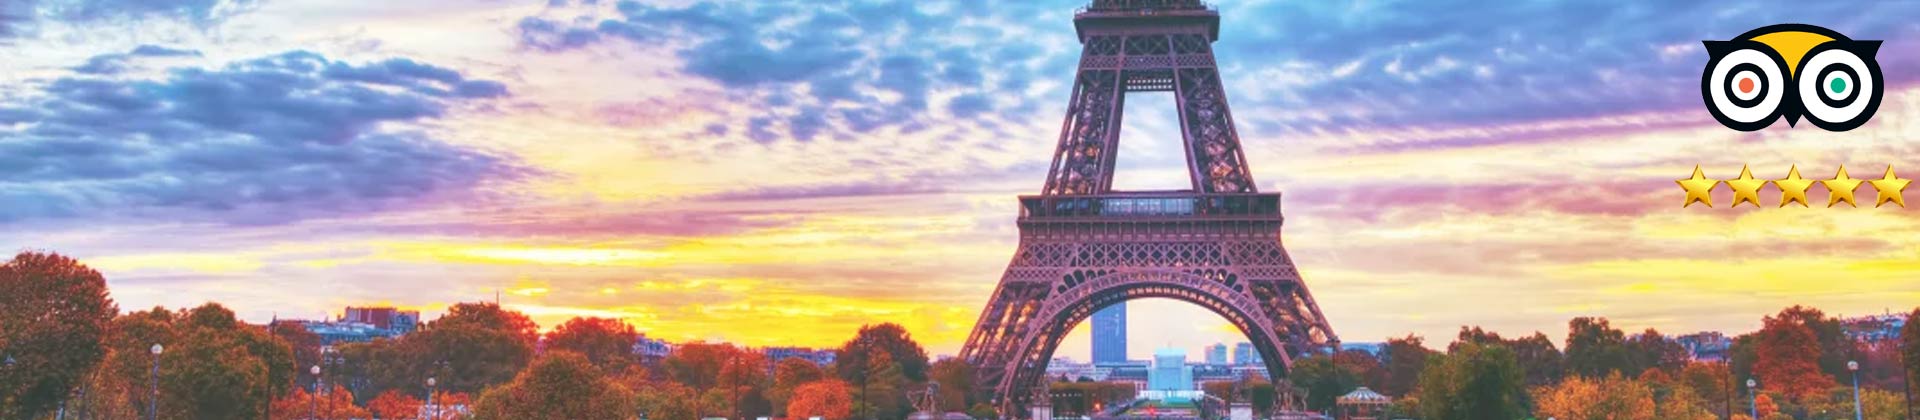 Paris Eiffel Tour